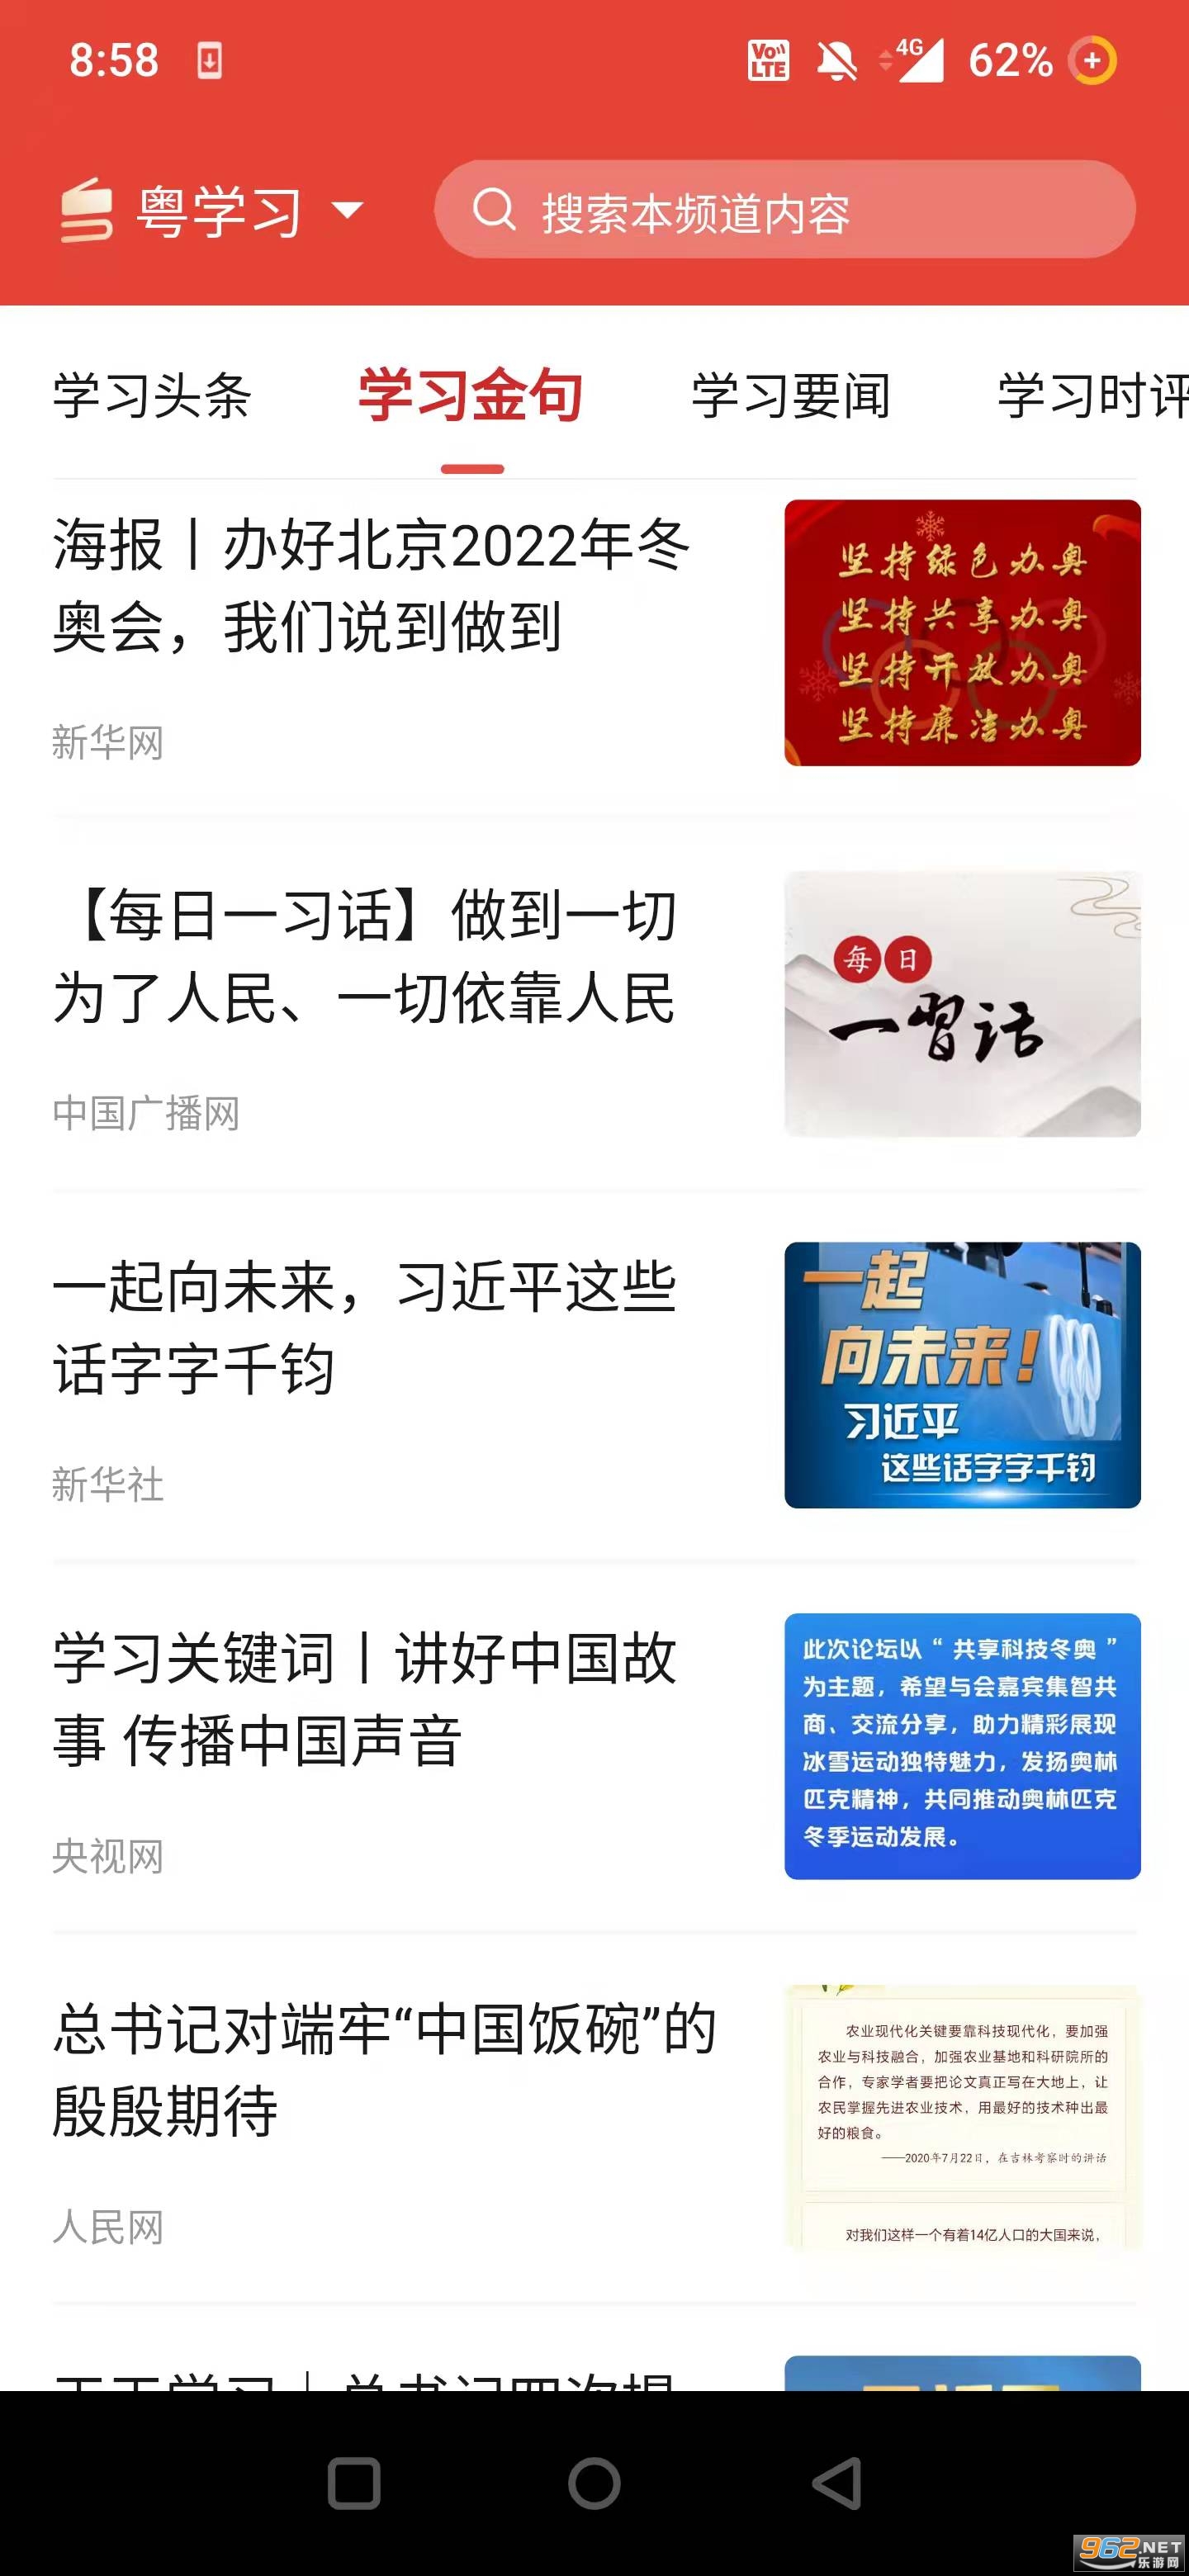 粤学习官方版 v2.0.0安卓版